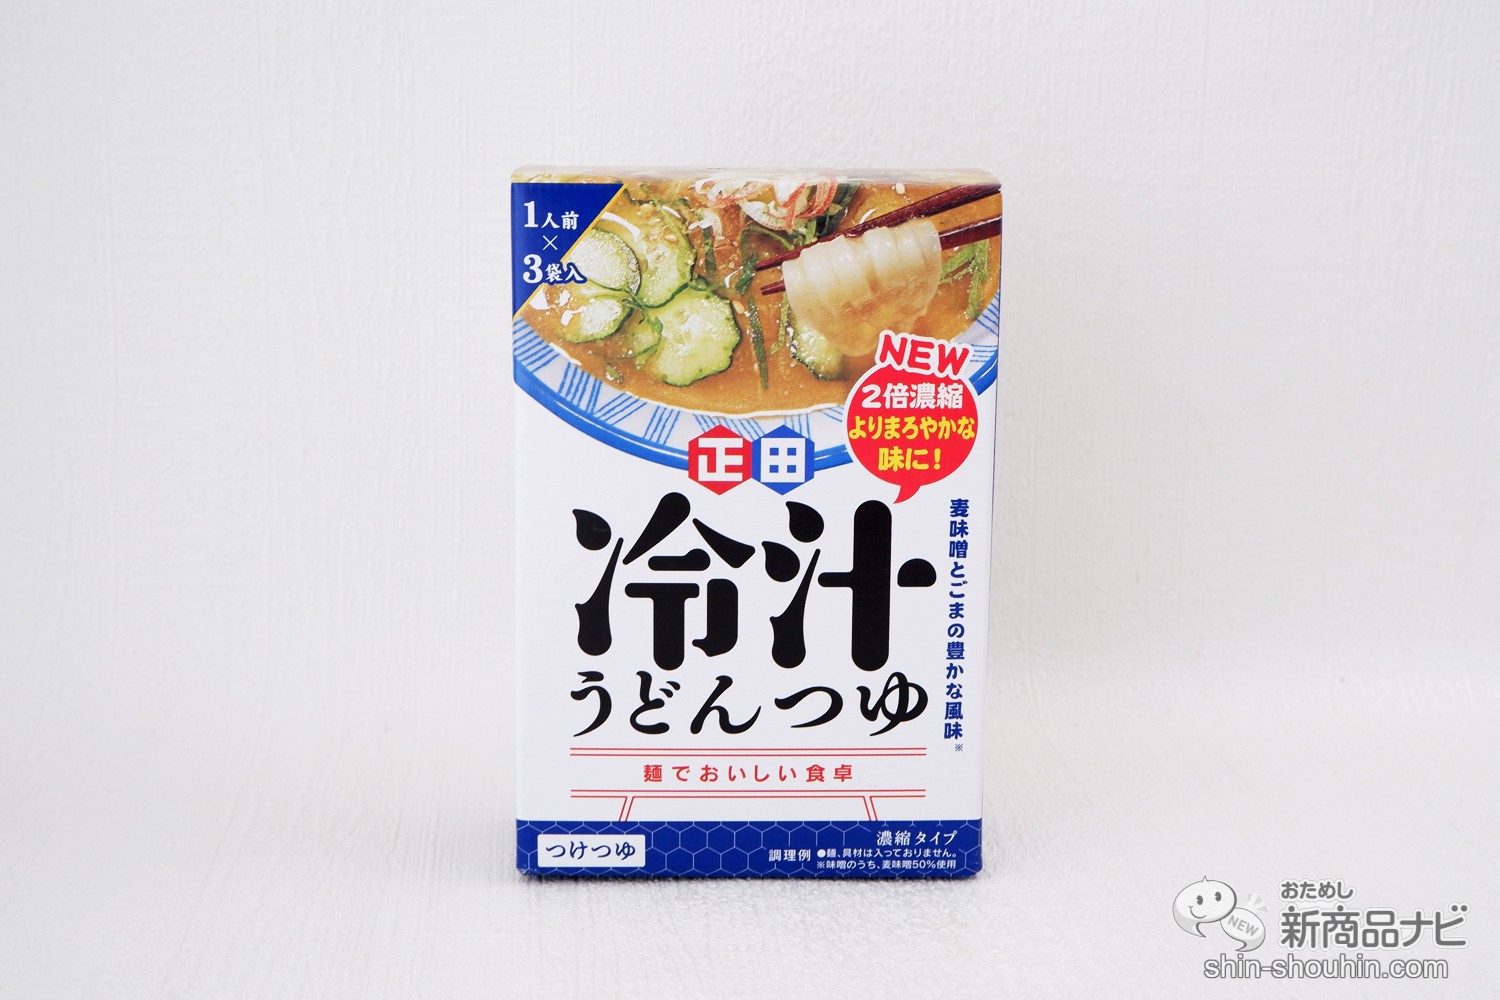 おためし新商品ナビ » Blog Archive » 夏に食べたい埼玉の郷土料理を